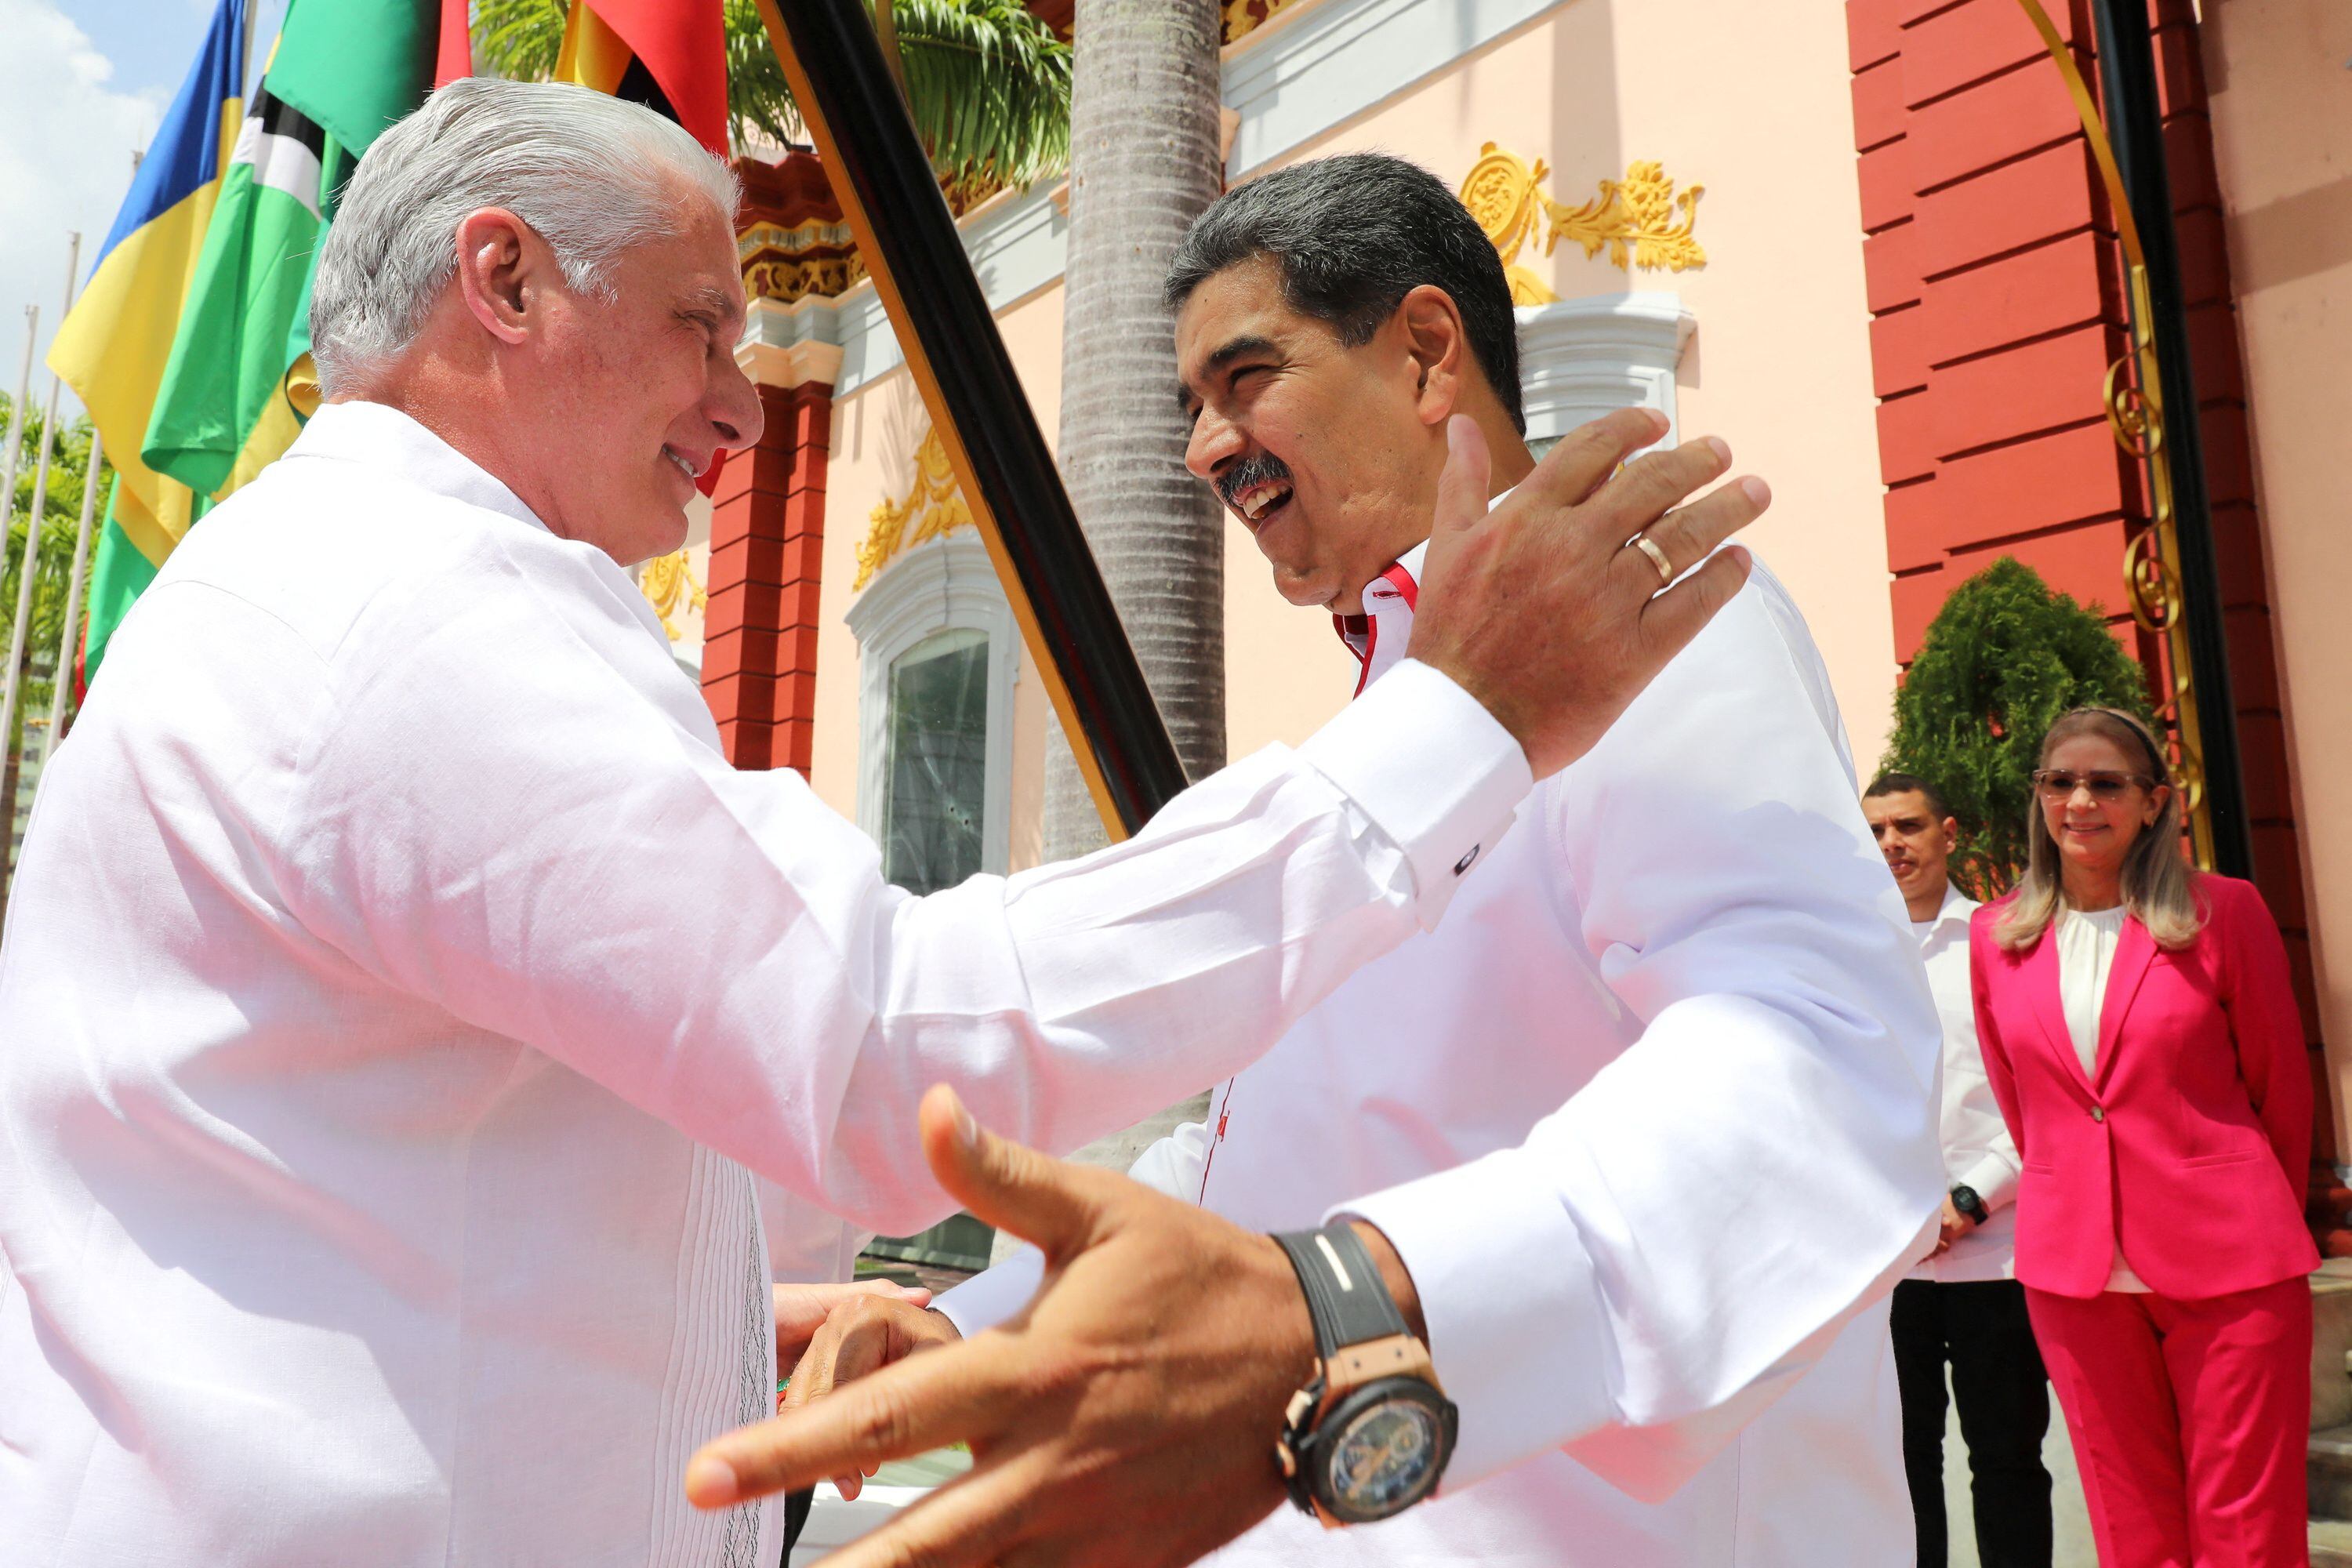 El dictador venezolano Nicolas Maduro saluda con una sonrisa al presidente de Cuba, Miguel Diaz-Canel, antes de la cumbre del Alba que se hizo en Caracas 